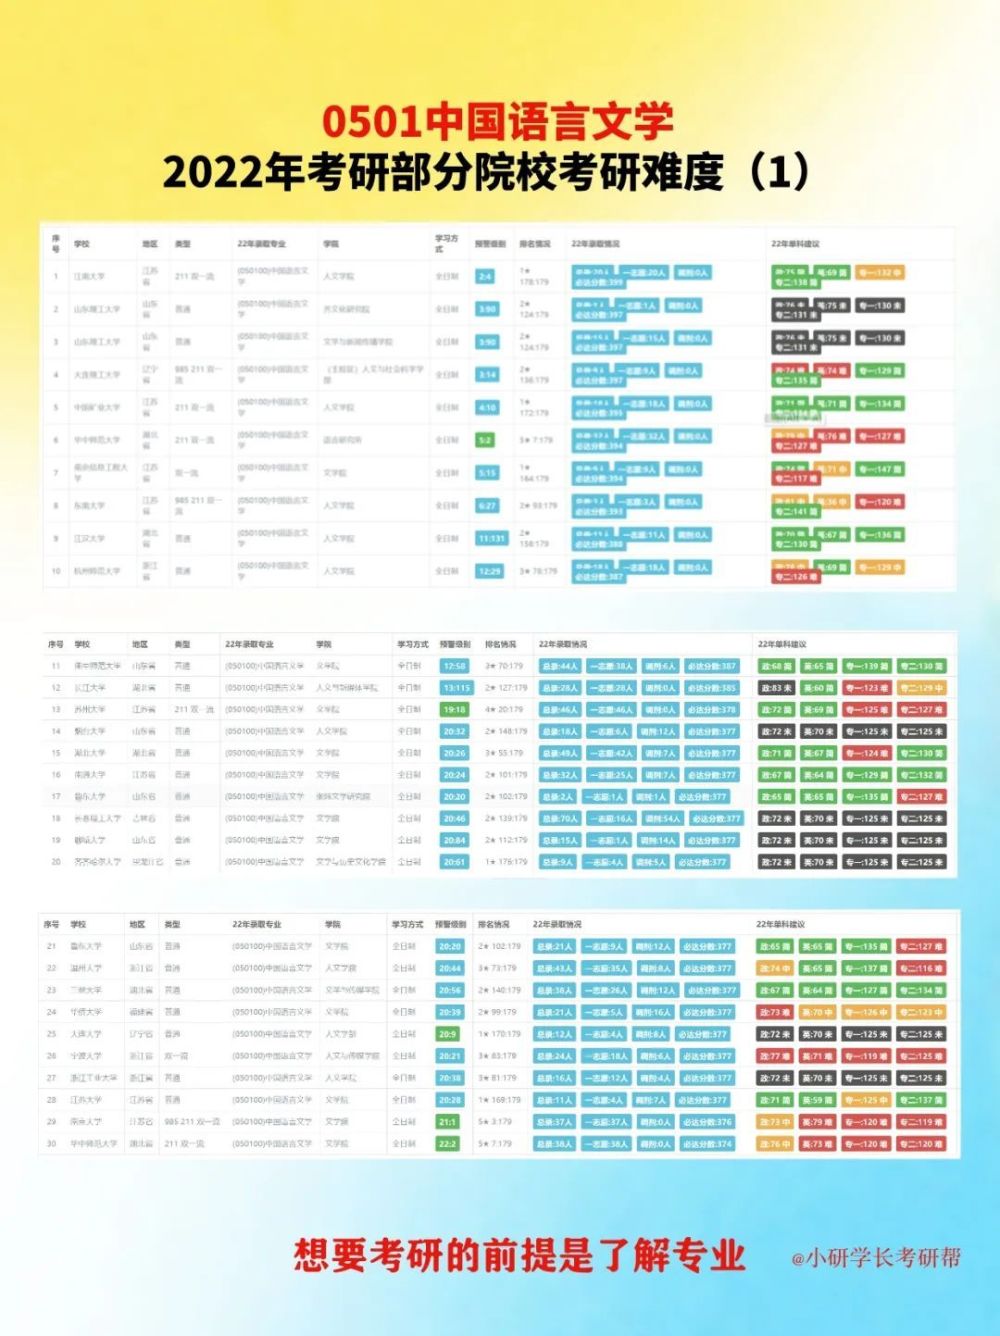 考研方向丨中国语言文学类考研方向(2023己更新)插图5